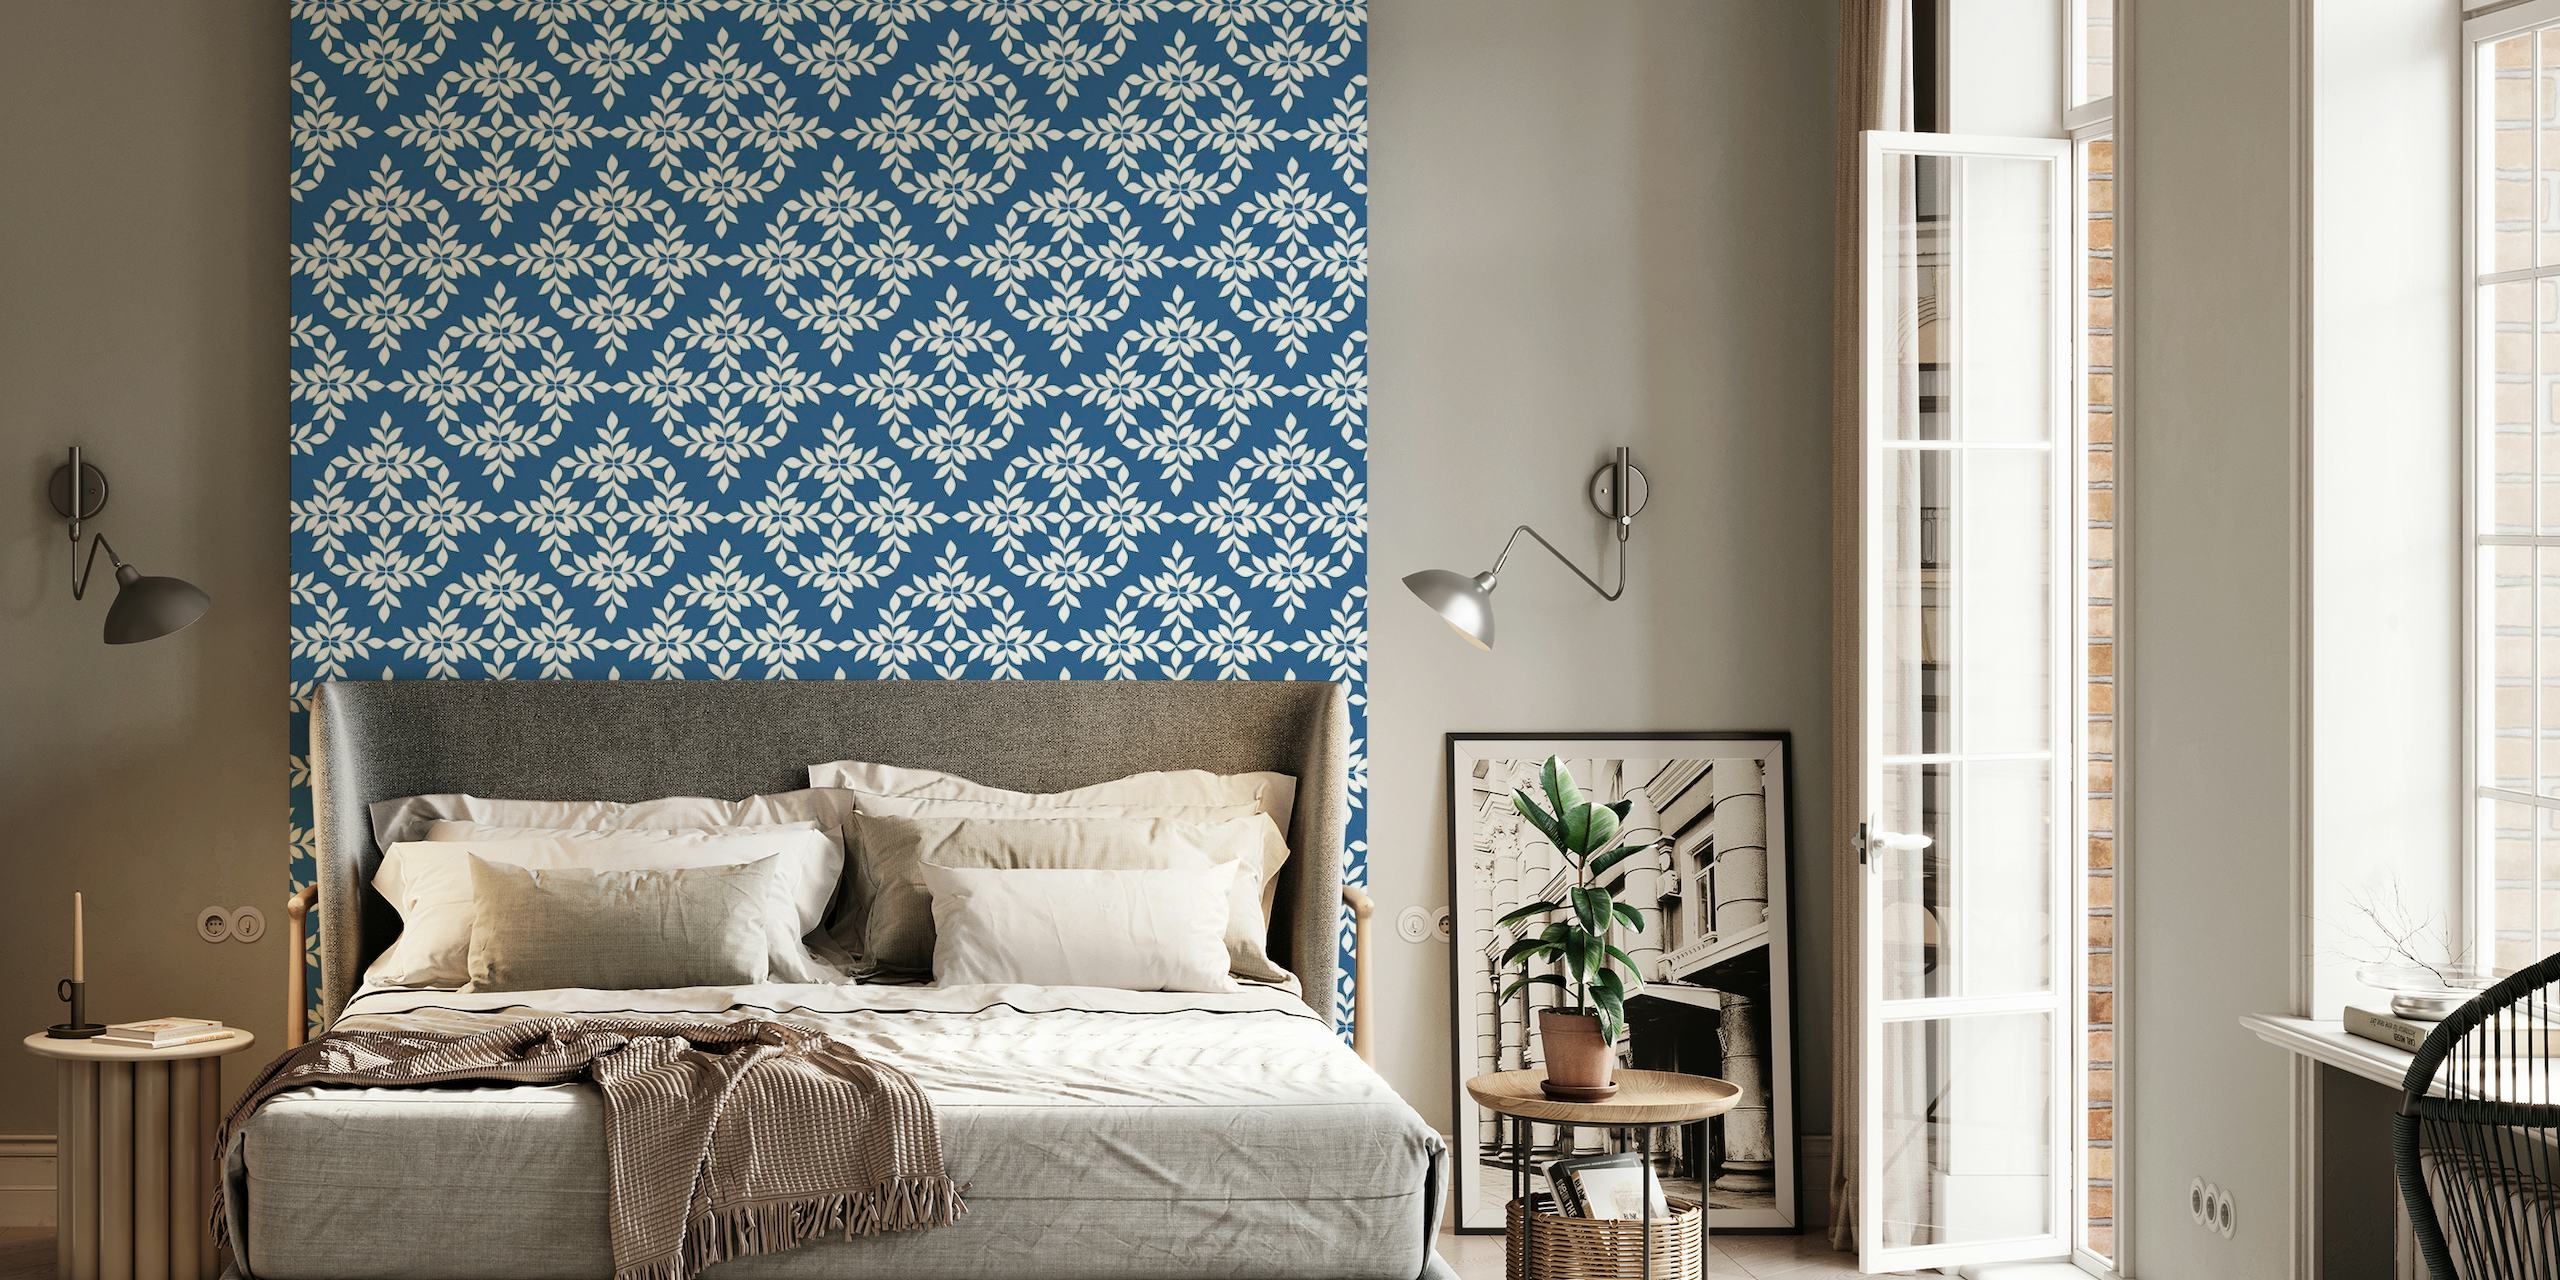 Indigo plavo-bijeli zidni mural s uzorkom i složenim dizajnom